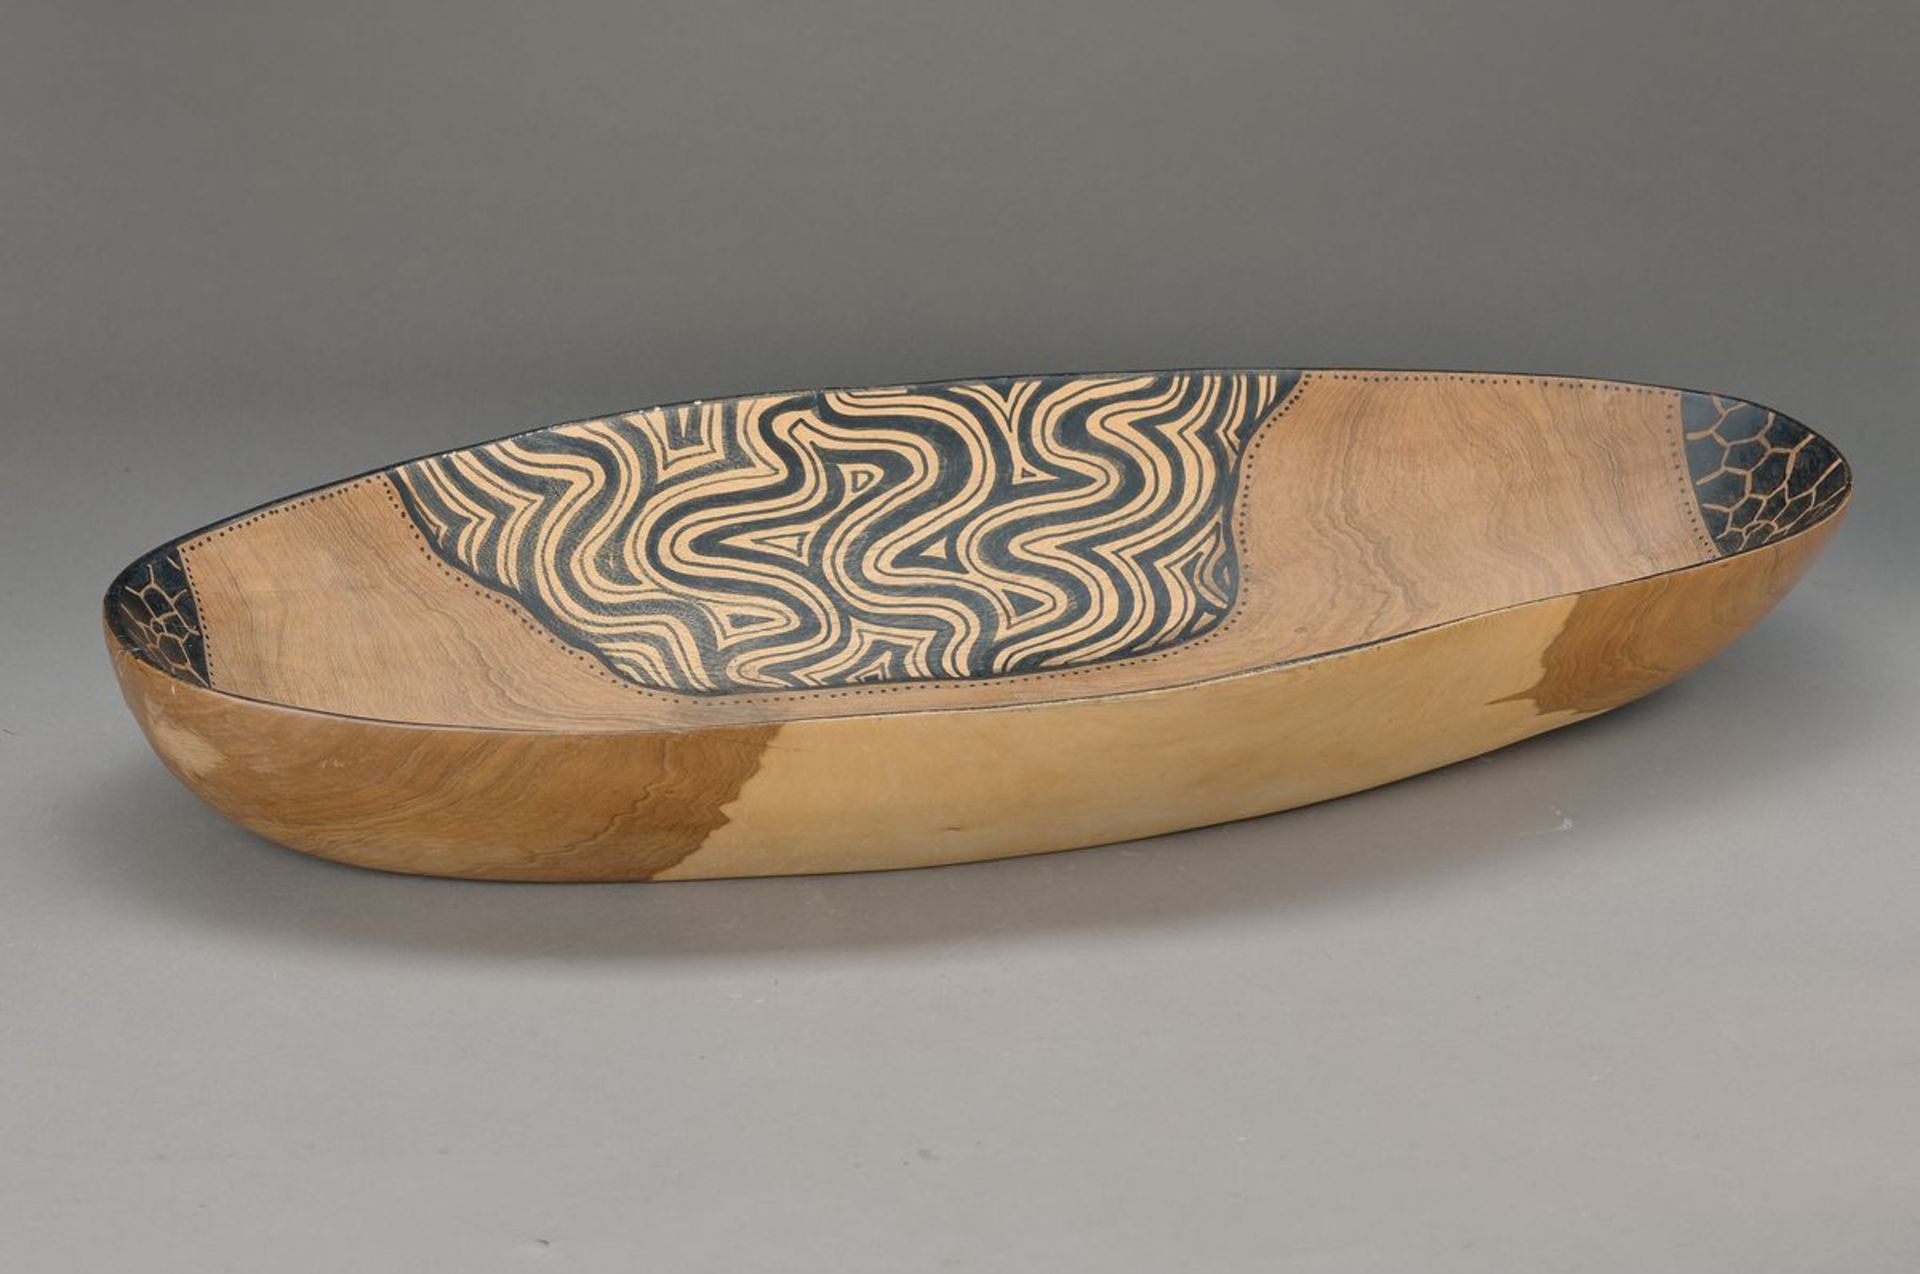 Holzschale, Aborigines, Australien, 20. Jh., fein gemasertes Steppenholz, bemalt, leichte Gebrauchs-